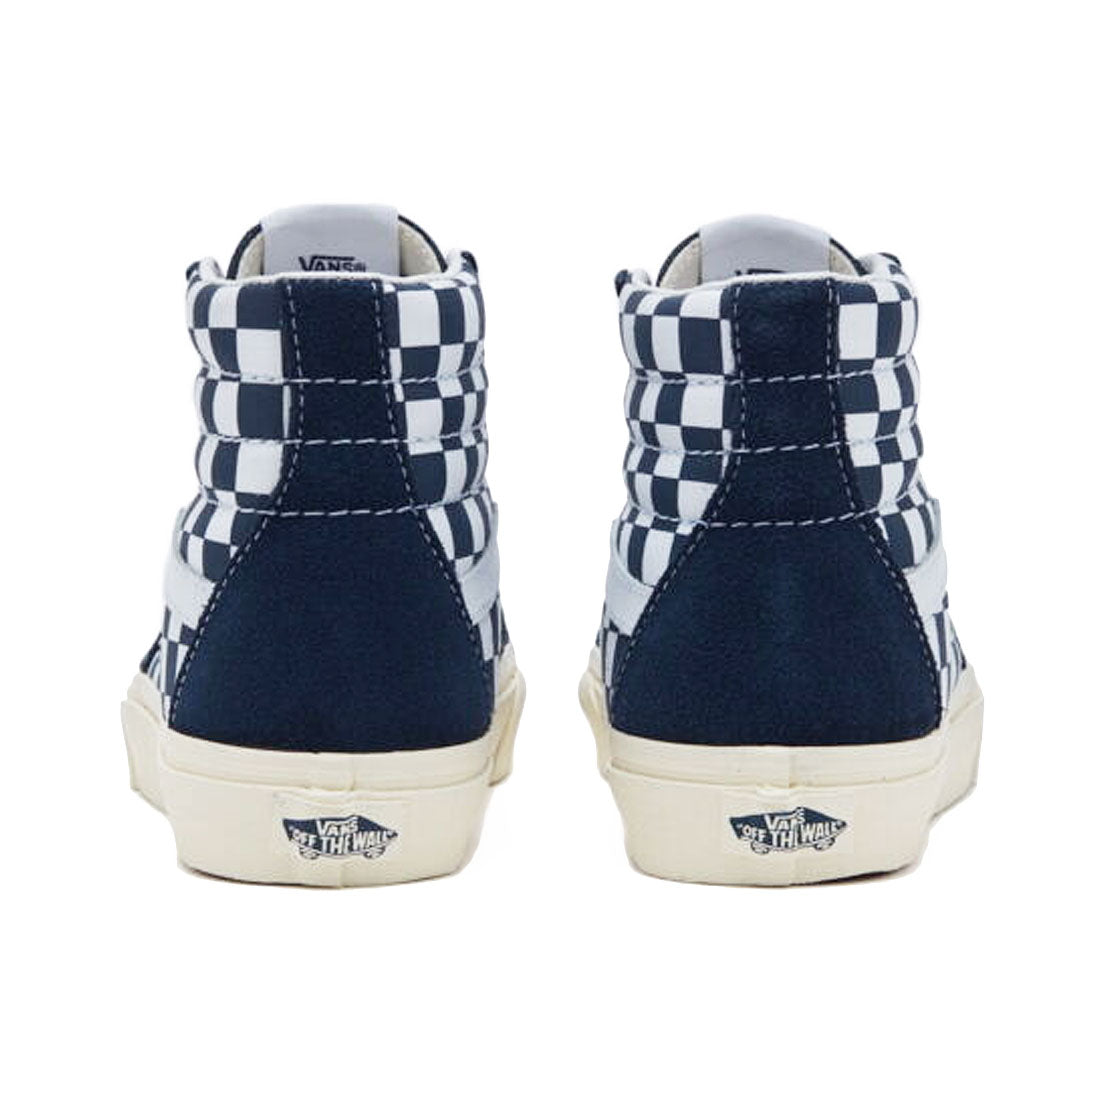 Vans SK8-HI Shoe - Checker/True Navy Shoes